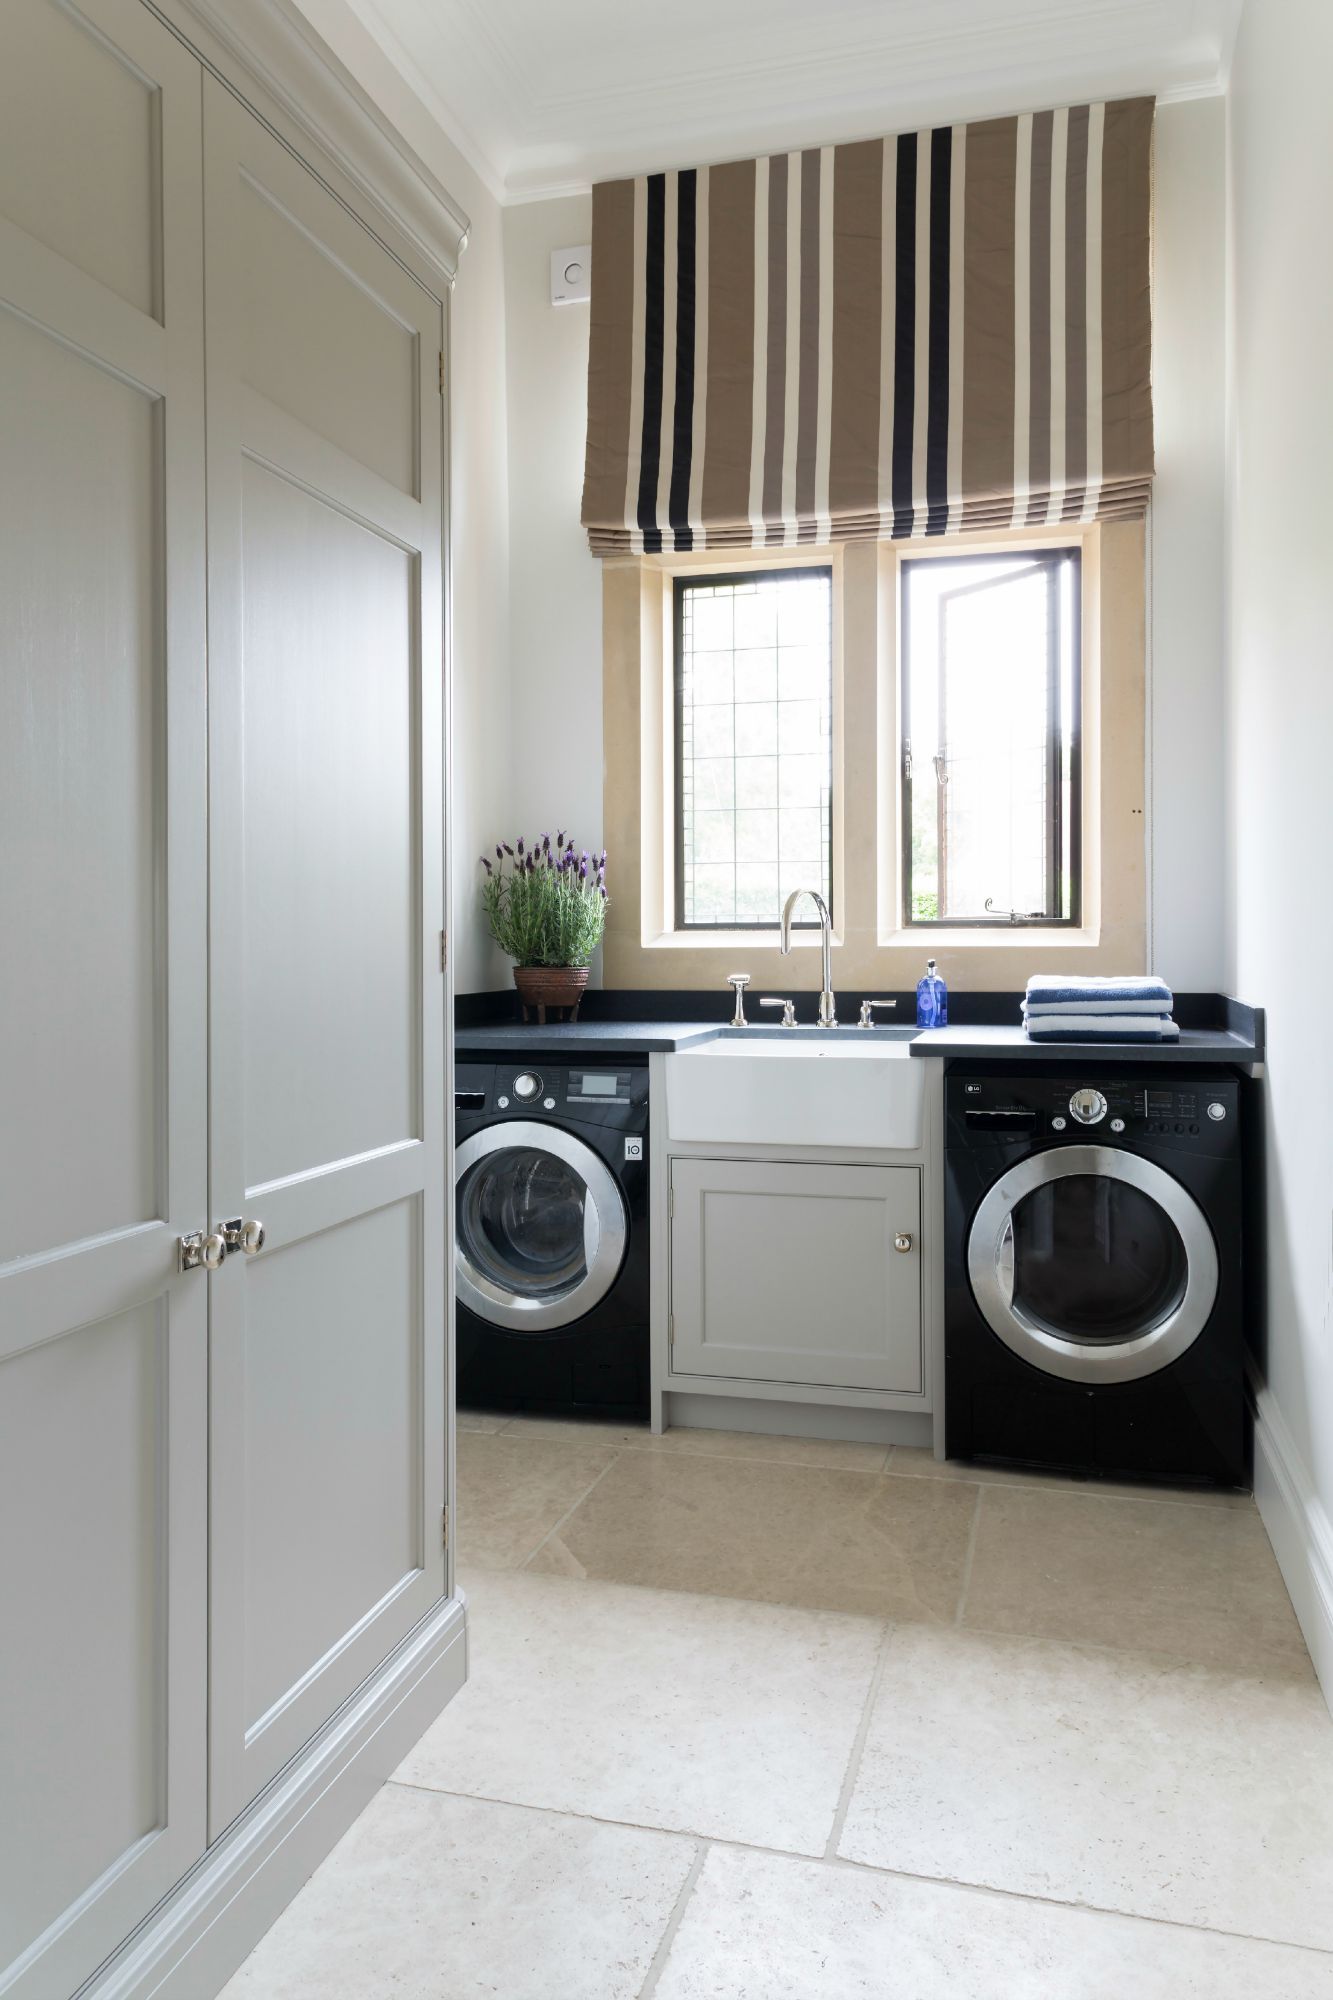 Laundry Room - Luxury Bespoke Kitchen Project - Ascot, Berkshire - Humphrey Munson